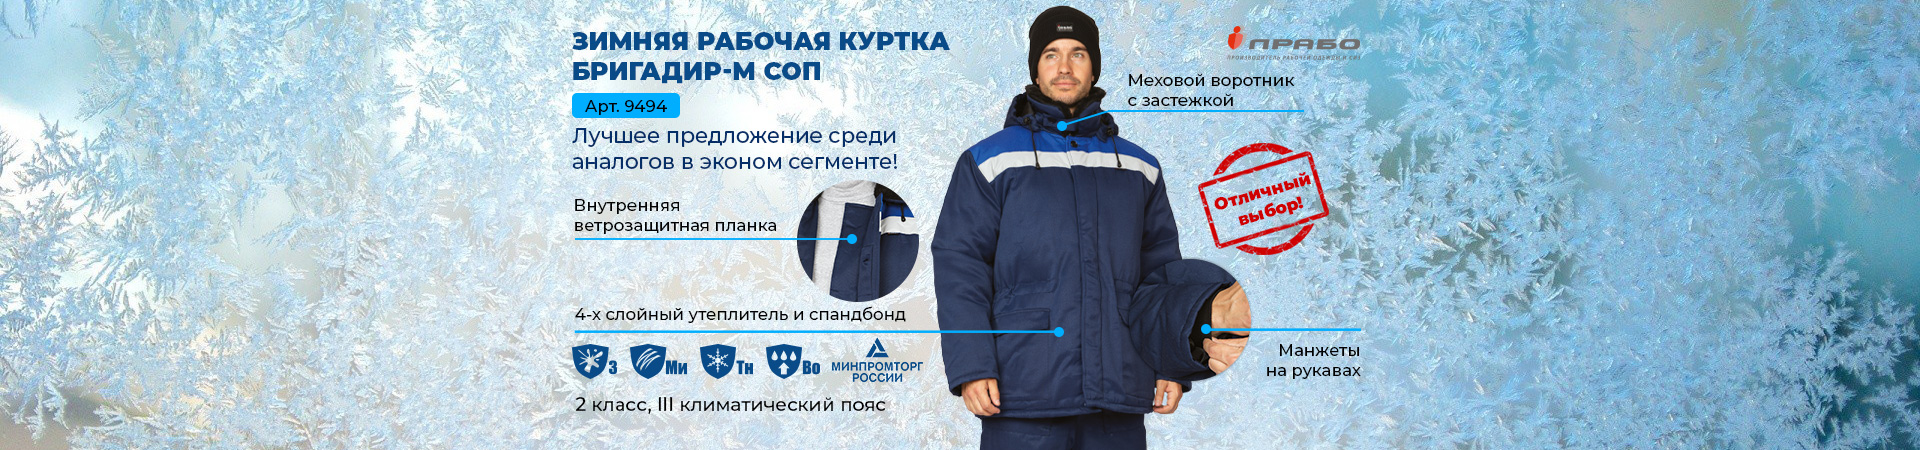 Зимняя рабочая куртка «Бригадир-М СОП» — обновлённая модель спецодежды!